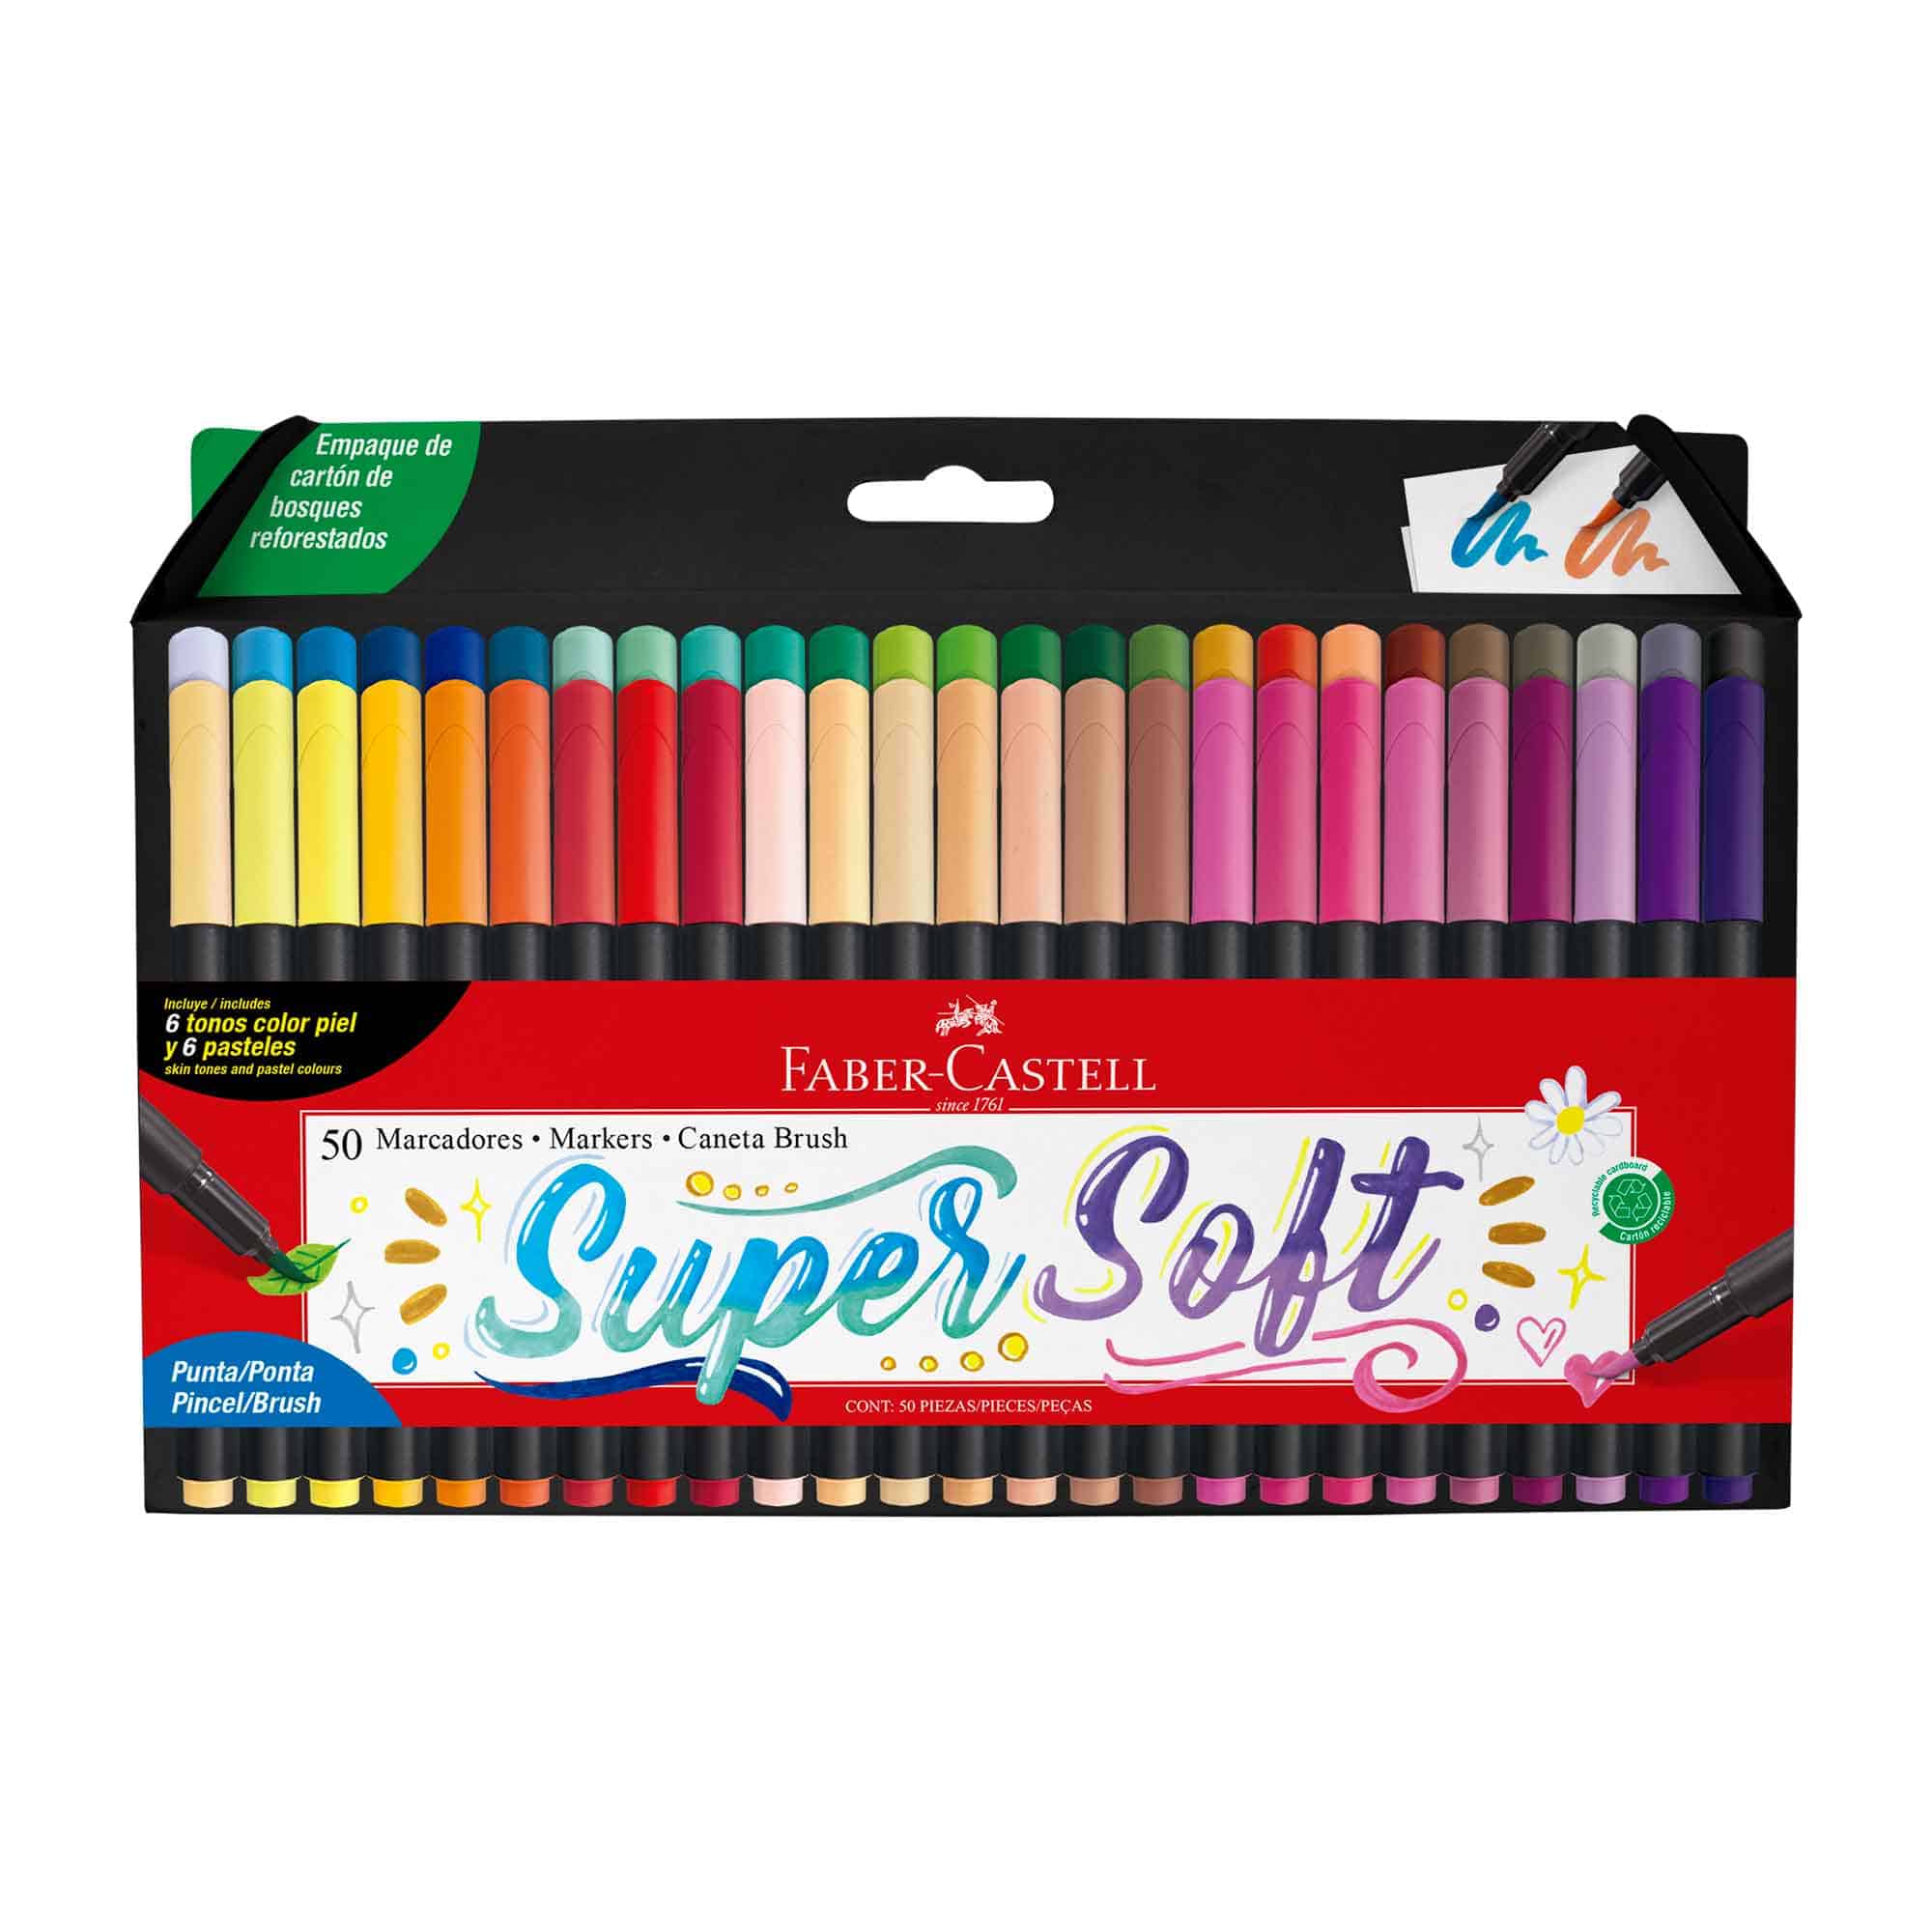  Faber-Castell Hexagonal Color Lapis, Multicolor, Super Eco, 12  Colors, Pack of 12 boxes : Productos de Oficina